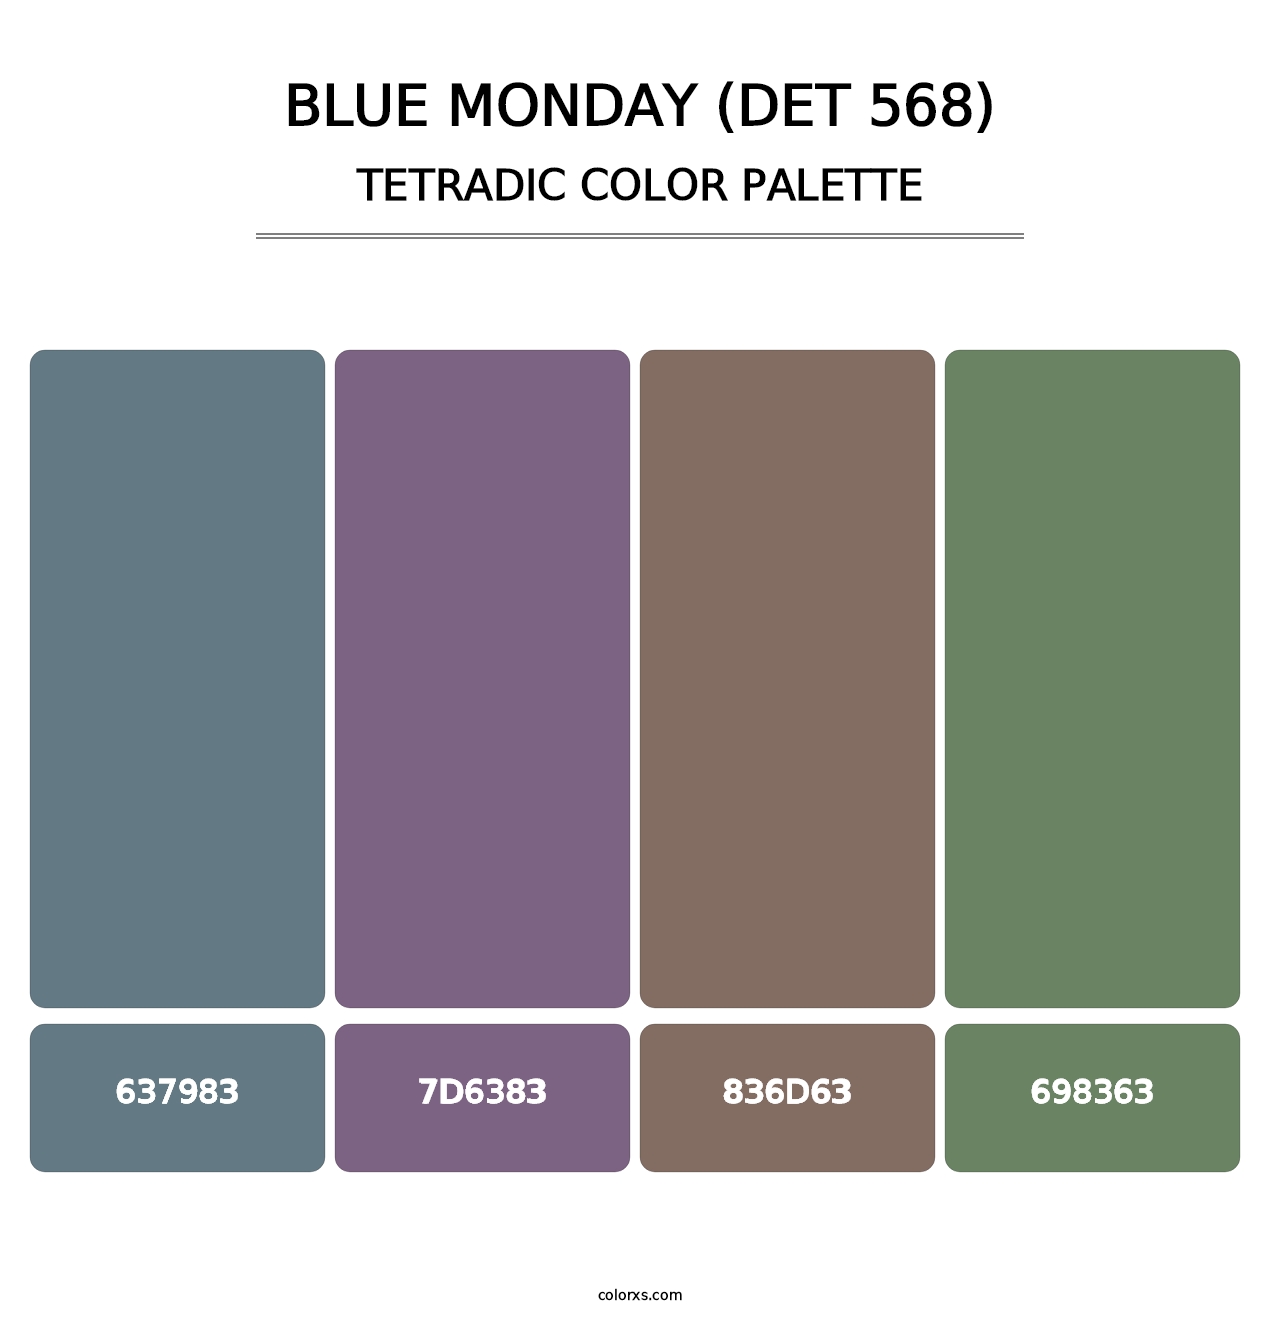 Blue Monday (DET 568) - Tetradic Color Palette